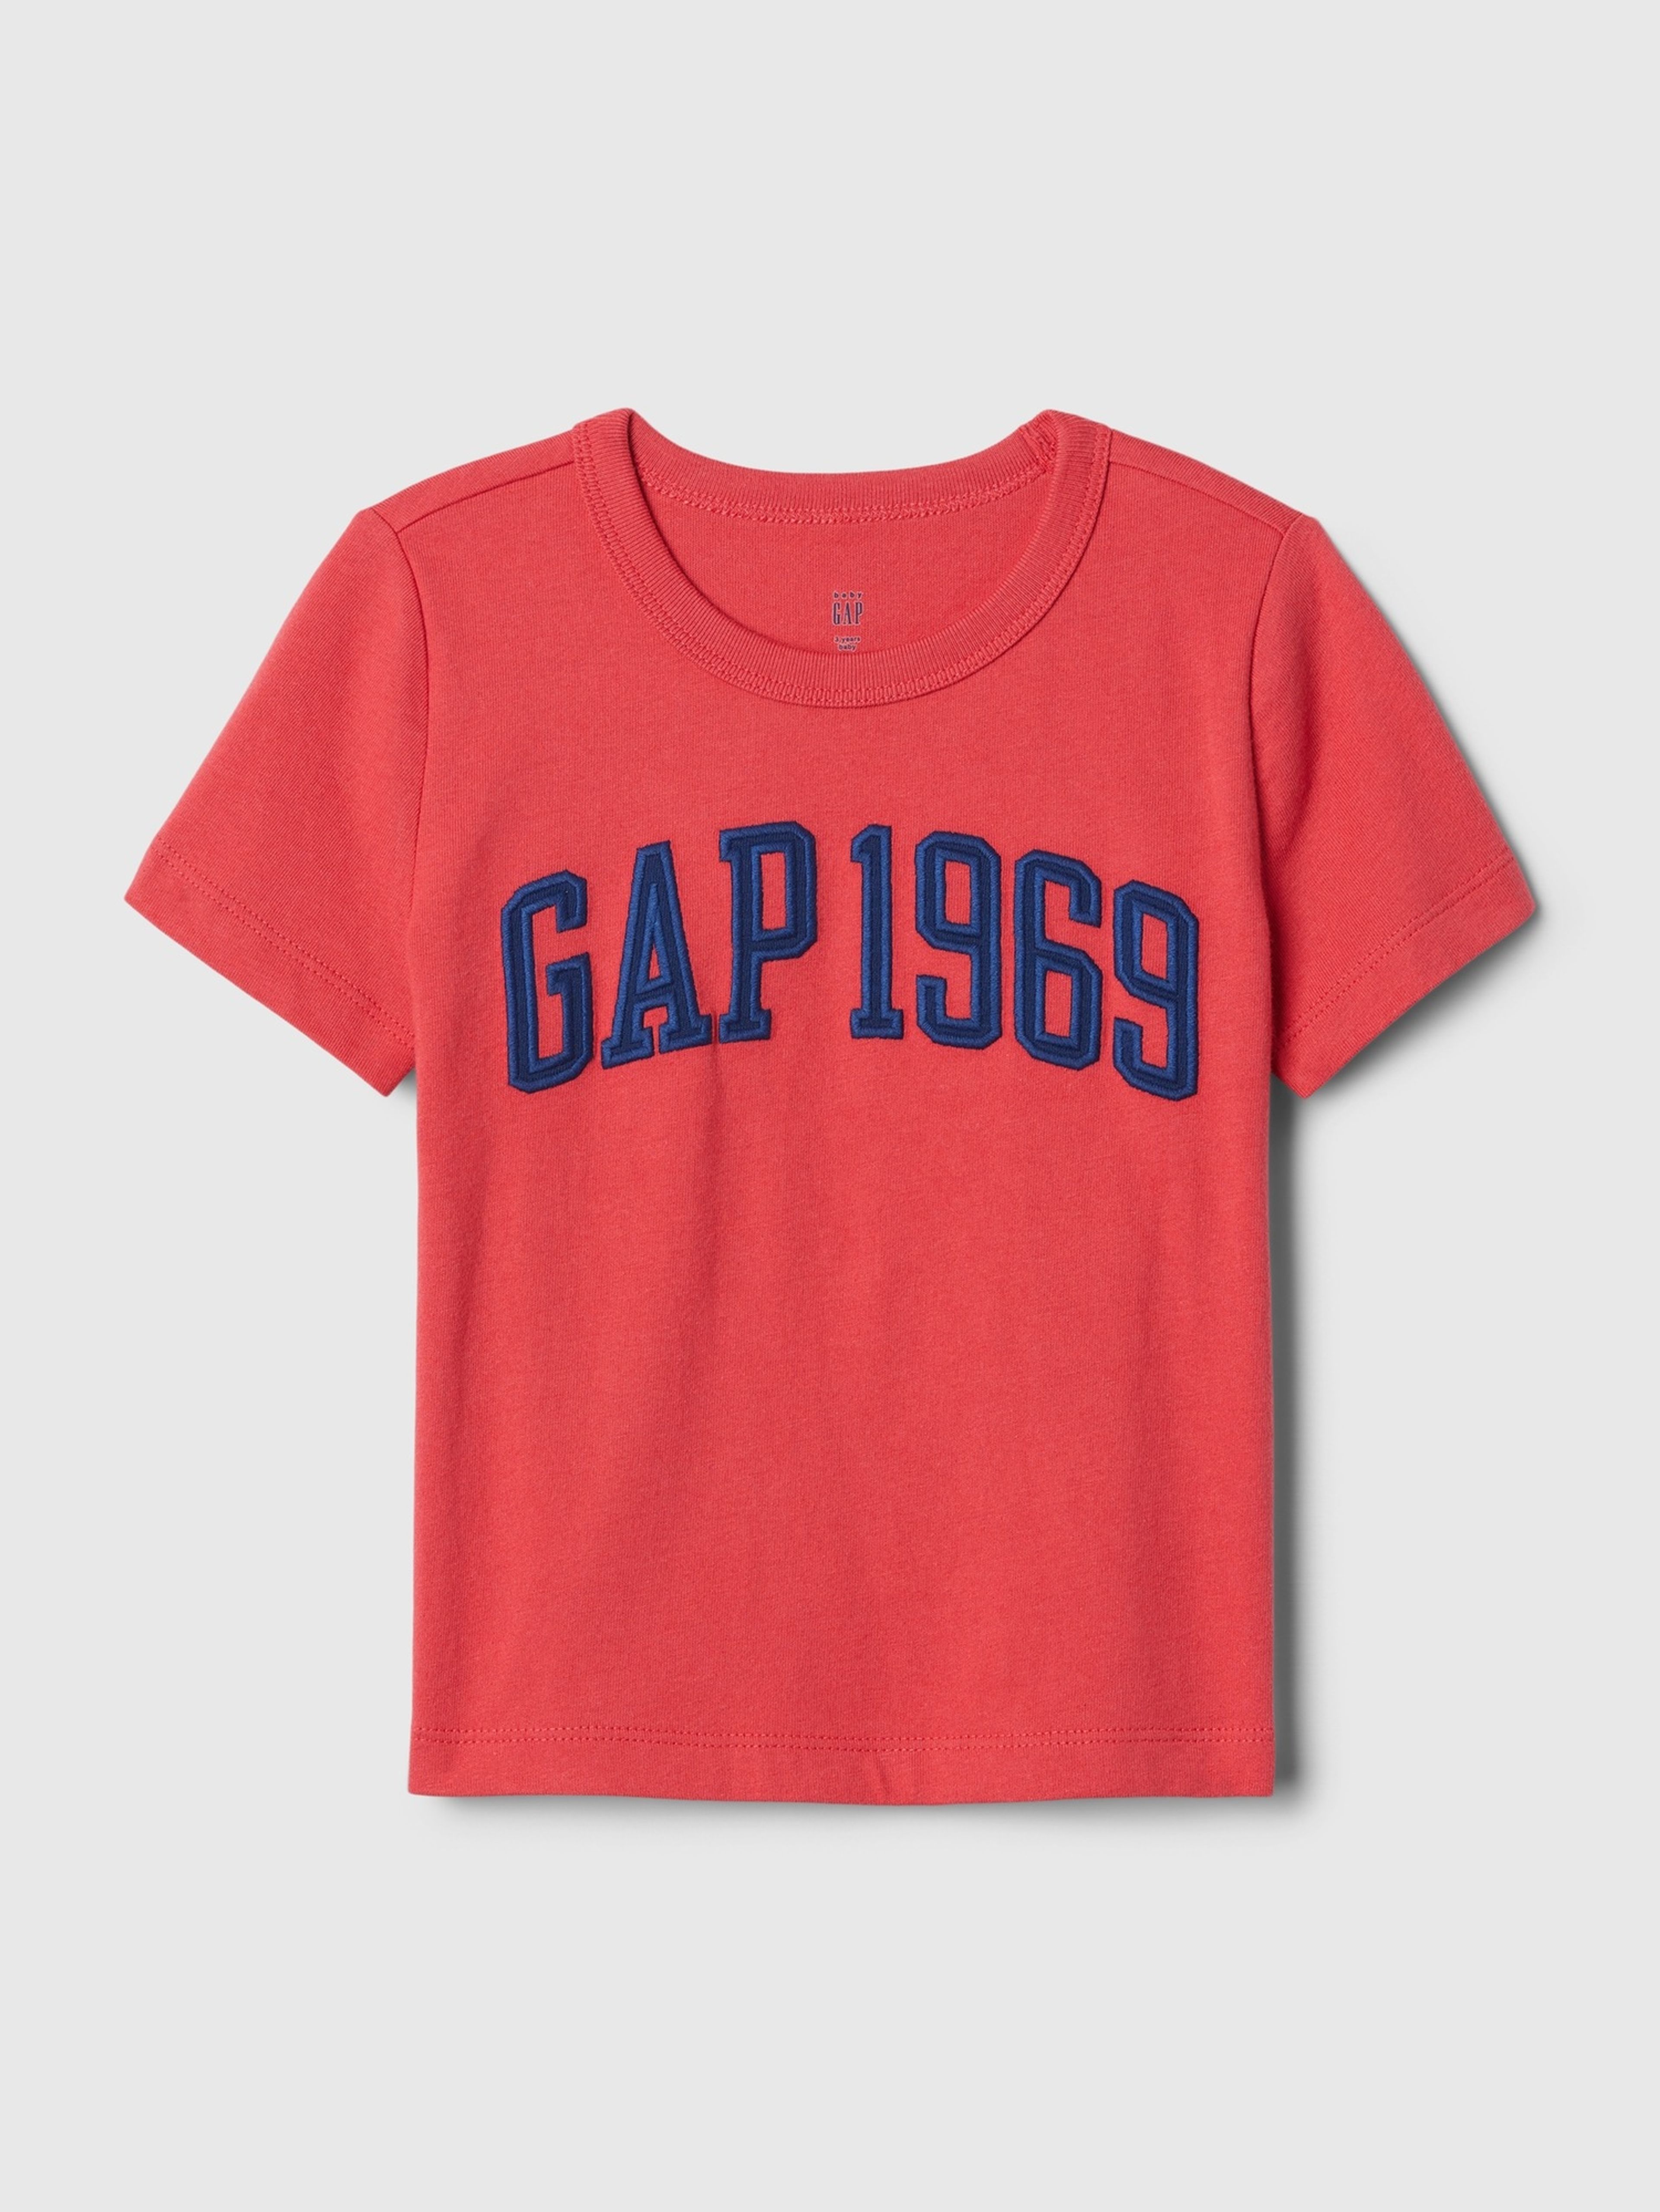 Dětské tričko GAP 1969